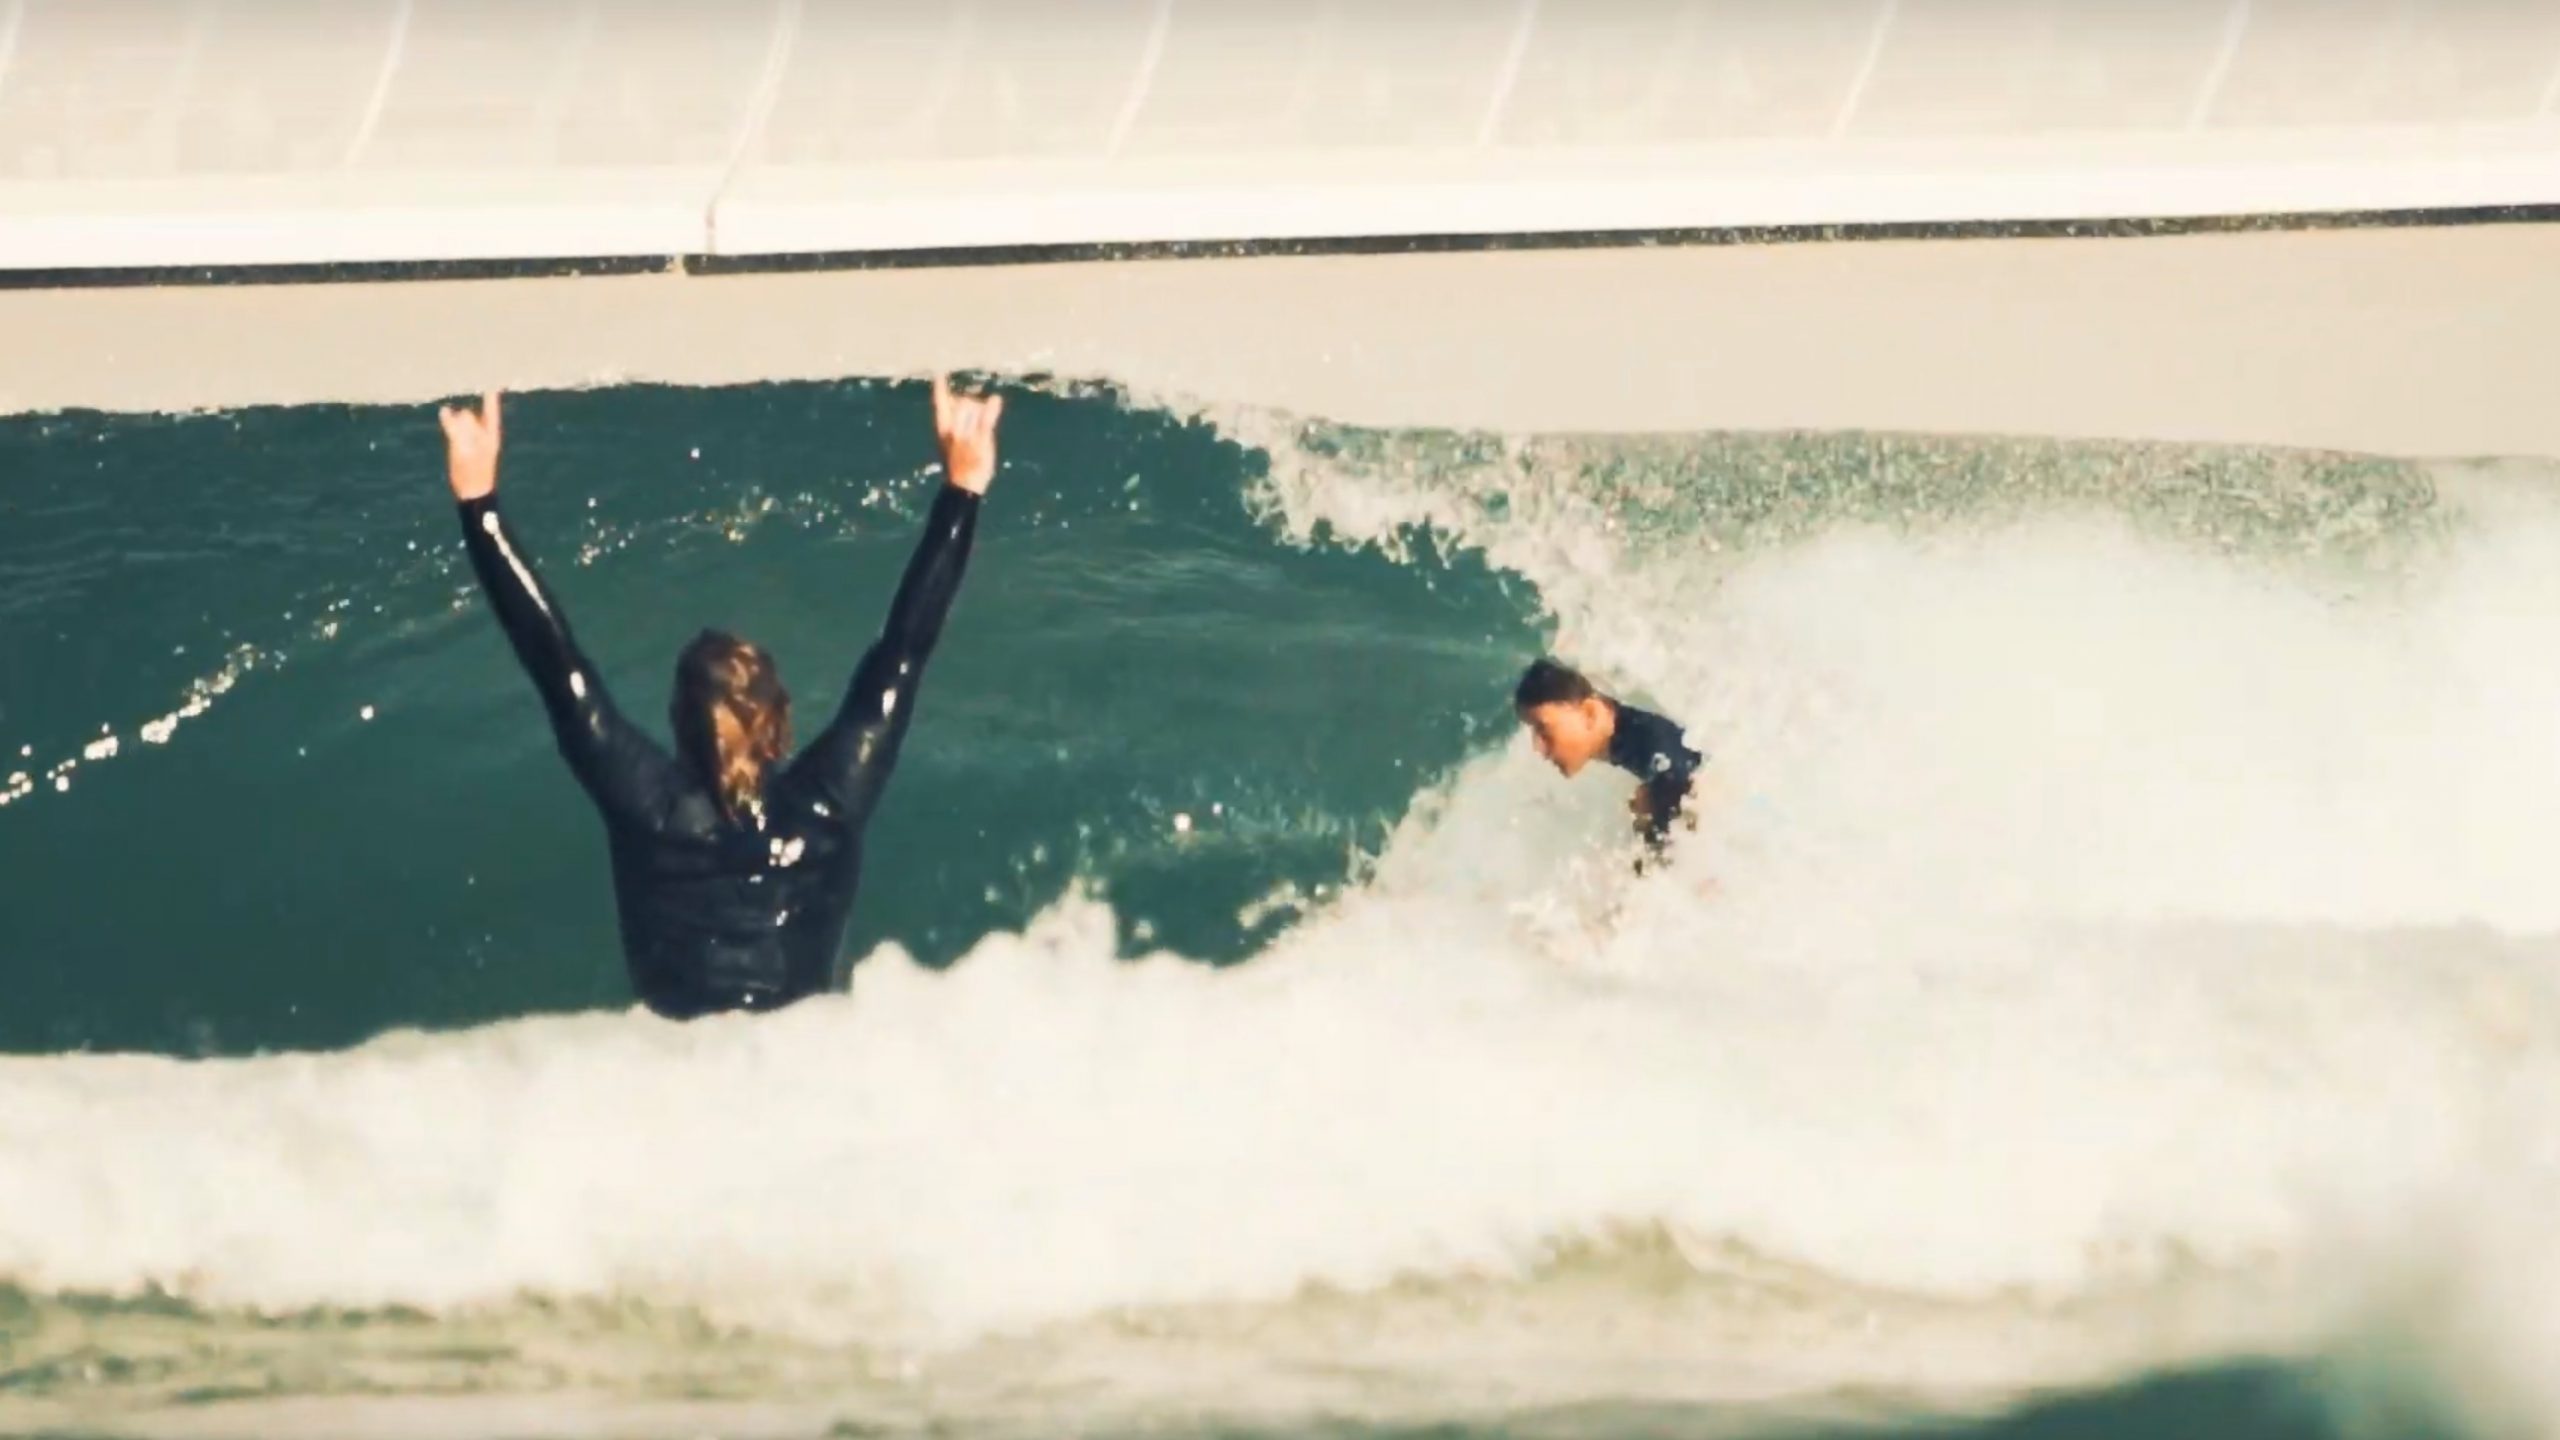 lukas skinner surfs a wave pool